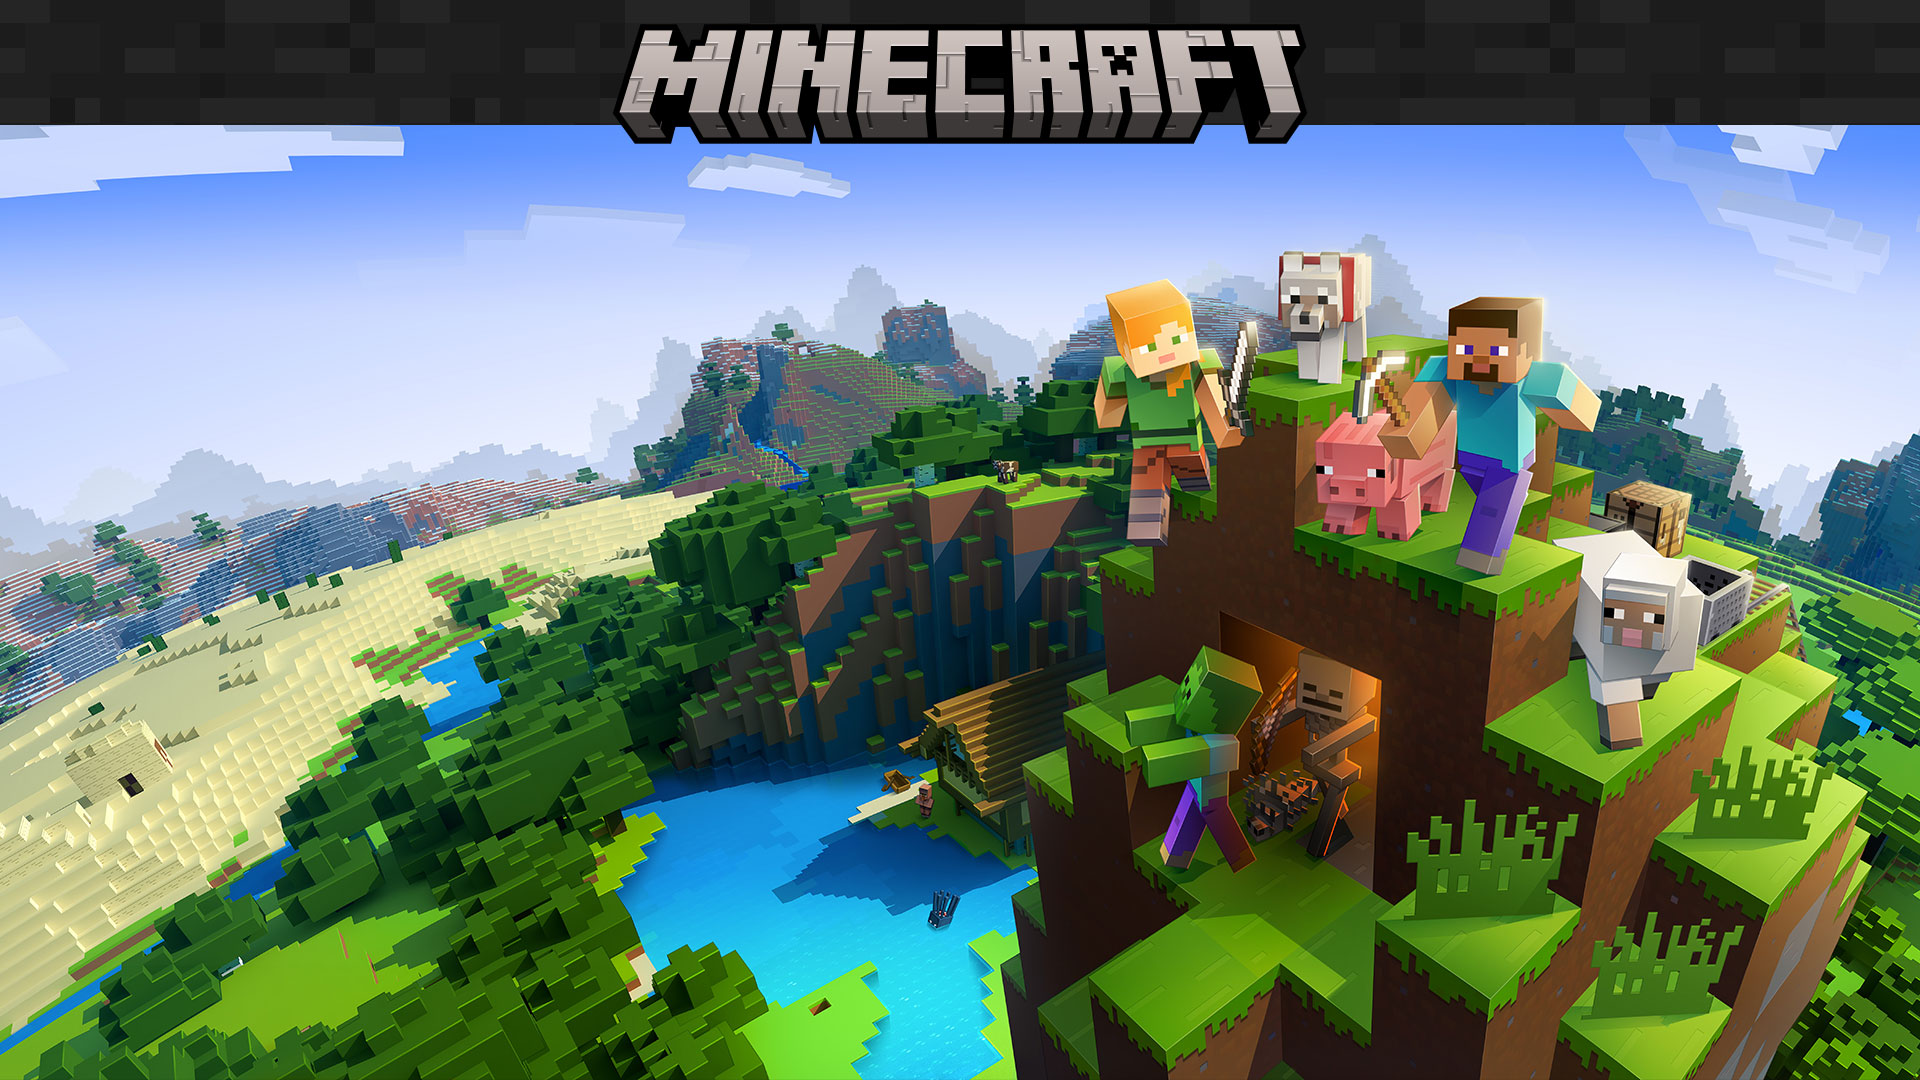 Логотип Minecraft с игровыми персонажами на фоне окружающего мира из блоков